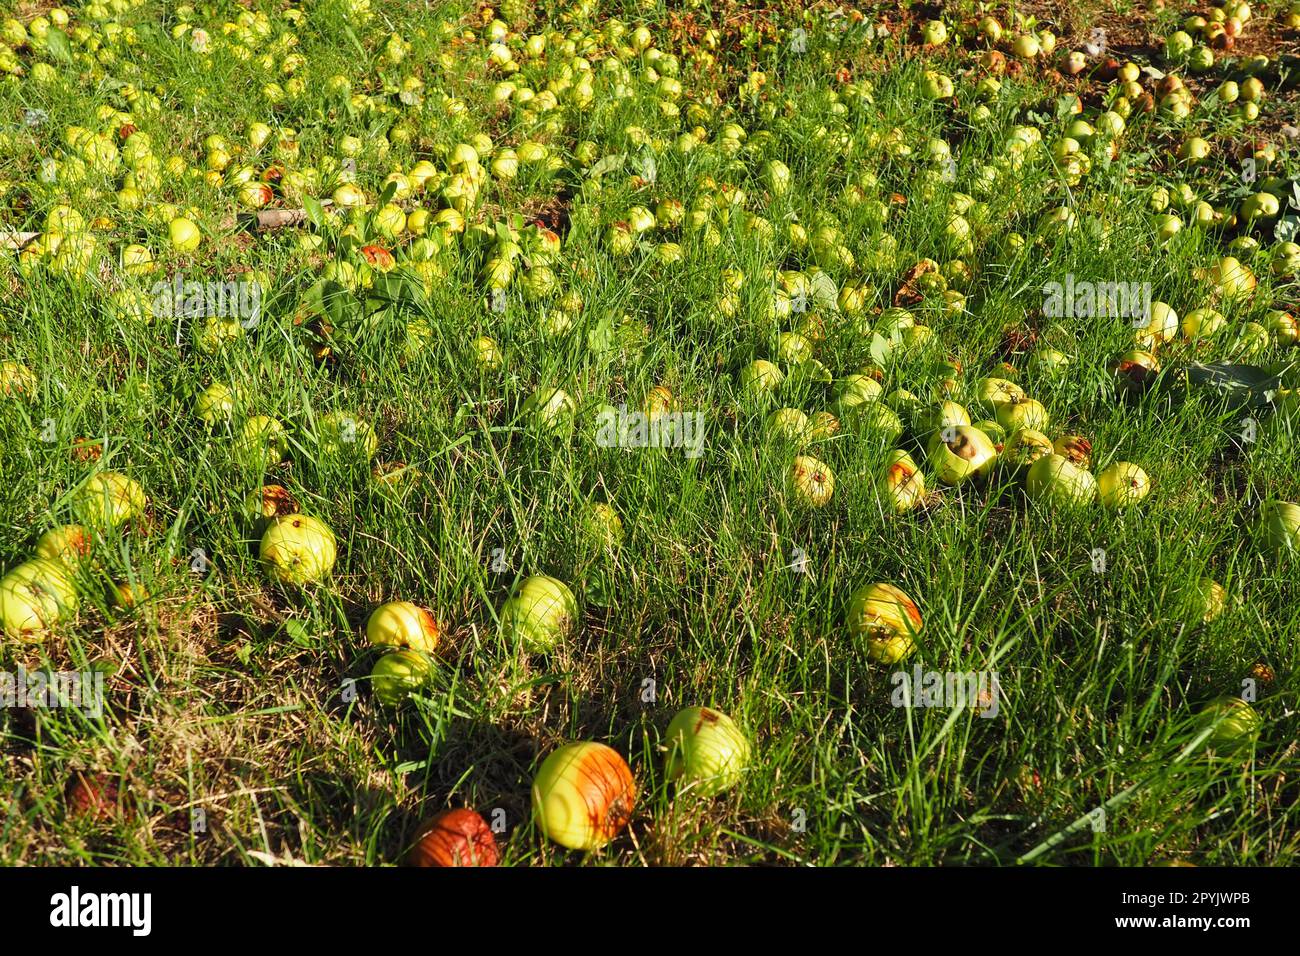 Giallo - le mele cadute verdi giacciono sull'erba sotto il melo. Perdita di resa e marciume della frutta. Agricoltura e orticoltura serbe. Foto Stock